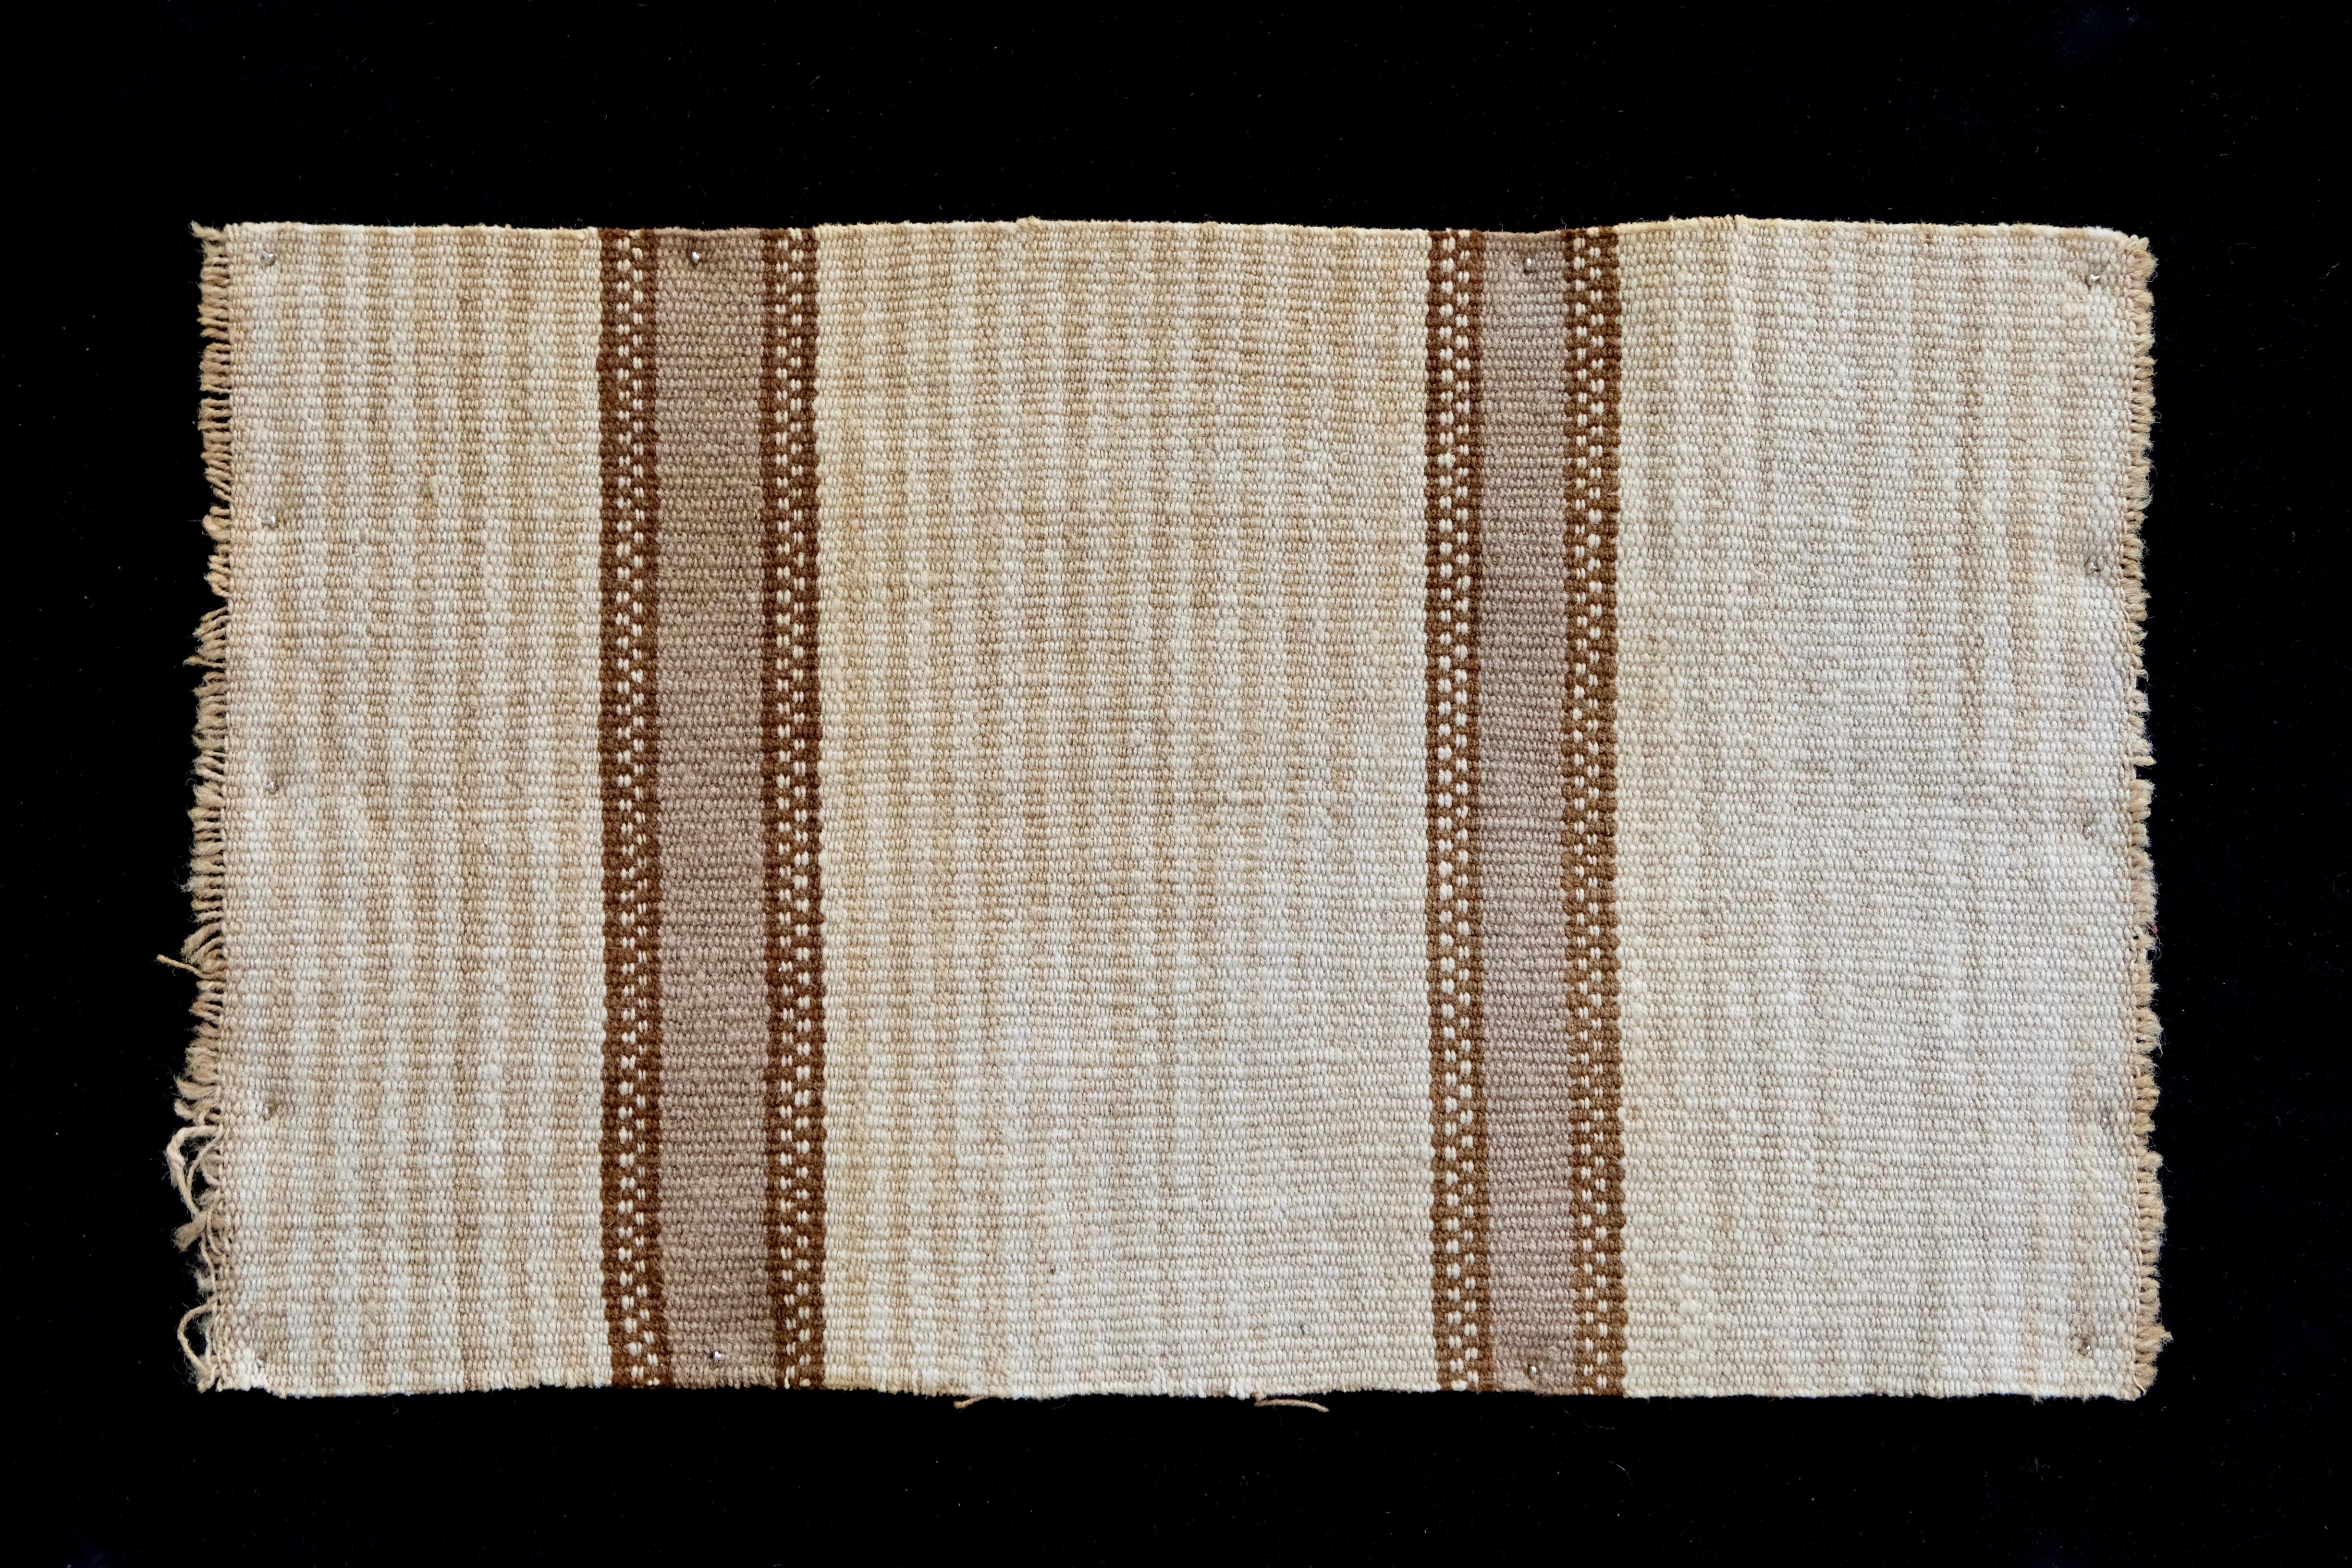 Erdtöne zieren dieses gestreifte, präkolumbianische Textil.

Es ist ein Wunder, Antiquitäten wie präkolumbianische Textilien zu sehen, ein authentisches Kunstwerk, das seit Jahrhunderten erhalten ist und von Generation zu Generation weitergegeben